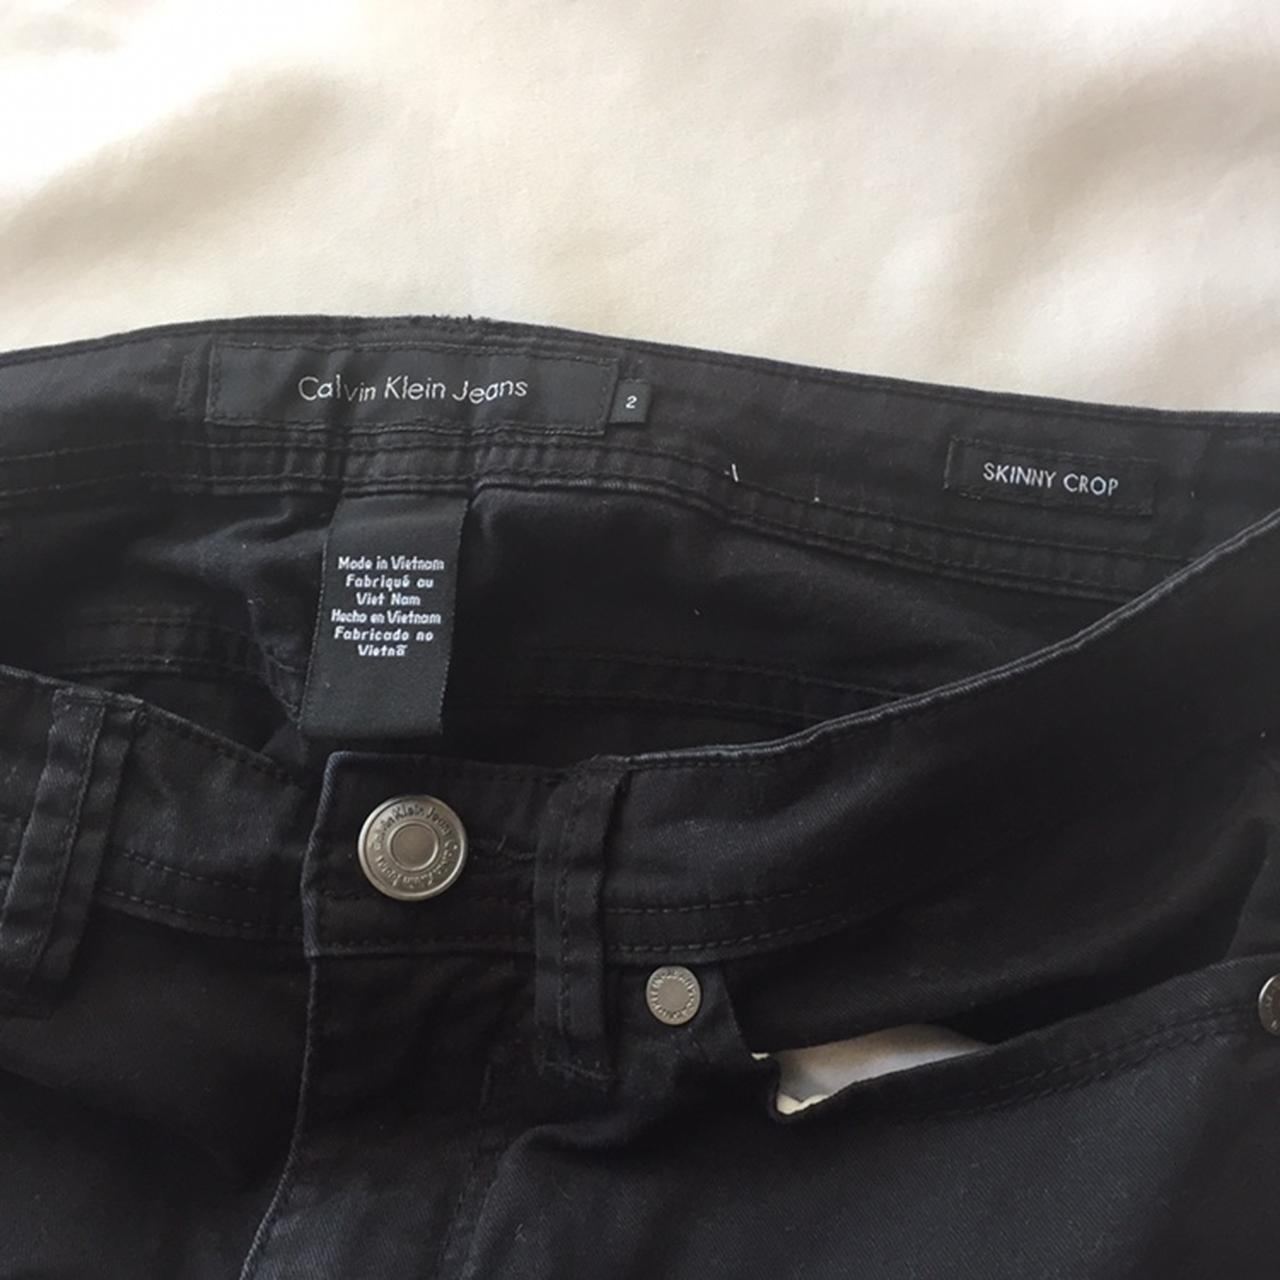 calvin klein skinny crop black jeans size 2🌸 never... - Depop